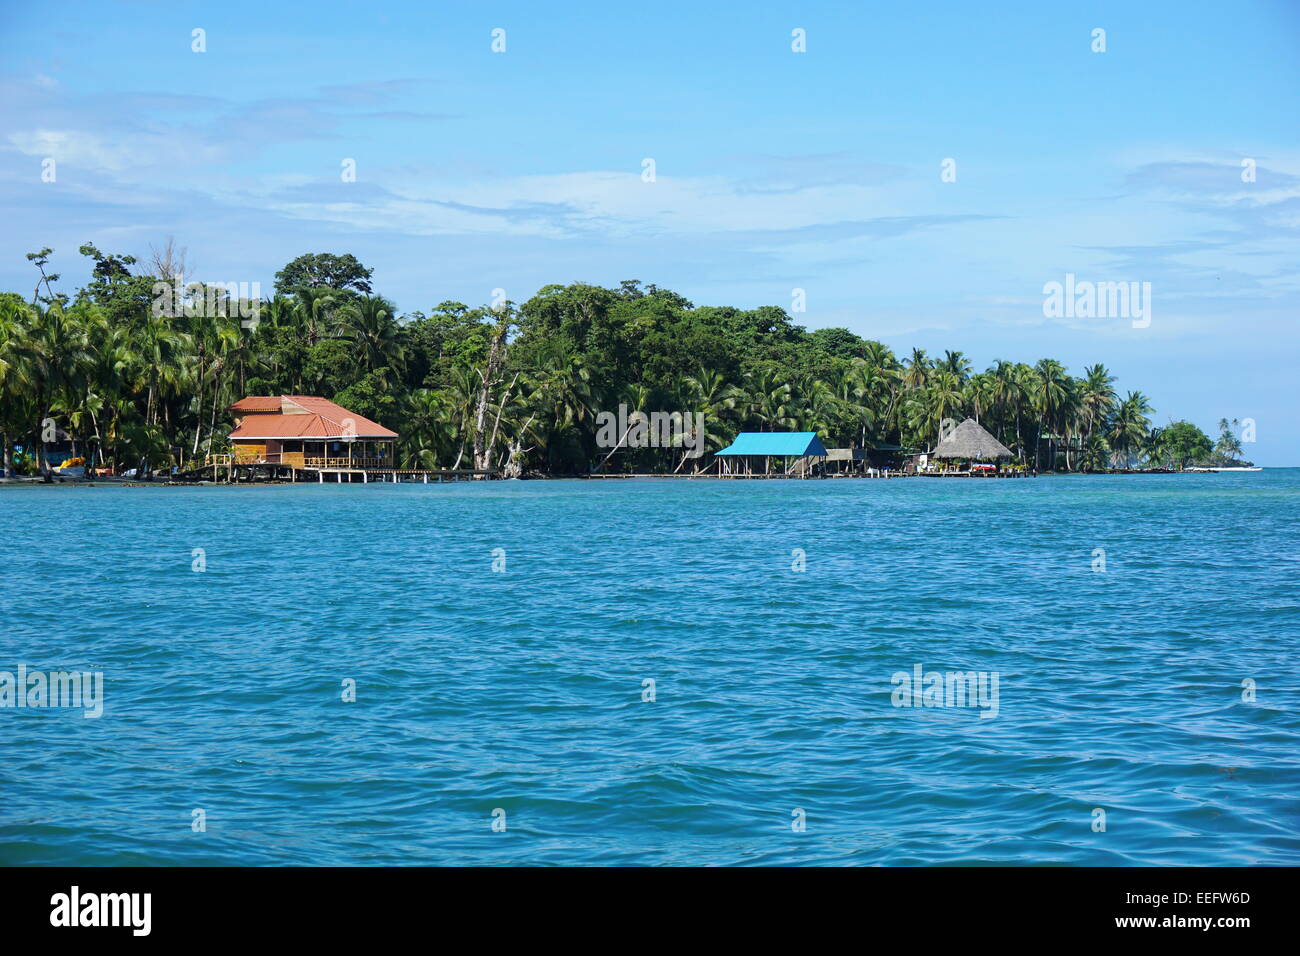 Costa di isola di Carenero con ristorante sul lungomare, Caraibi, Bocas del Toro, Panama America centrale Foto Stock